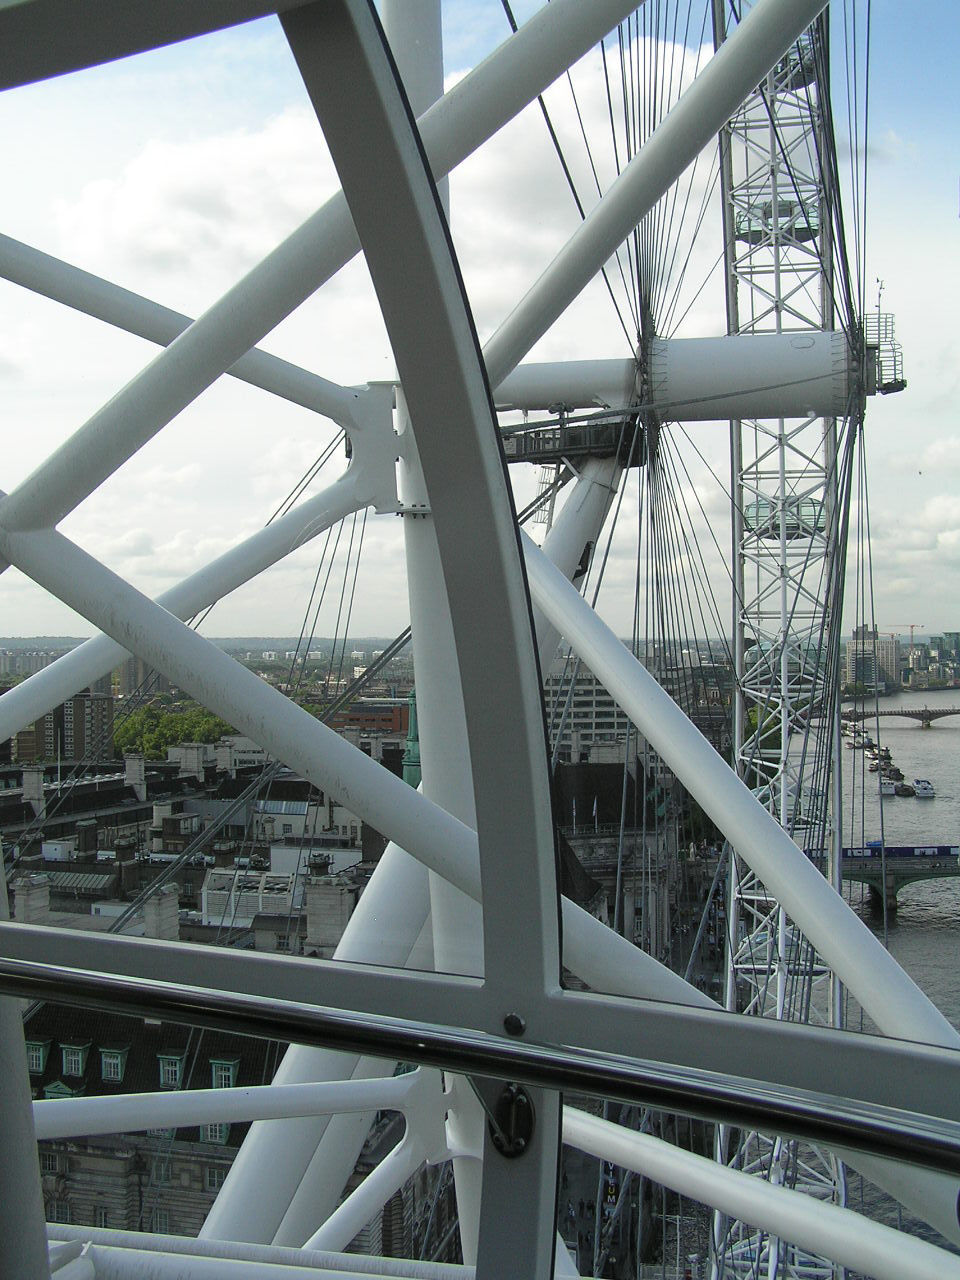 London 543 London Eye